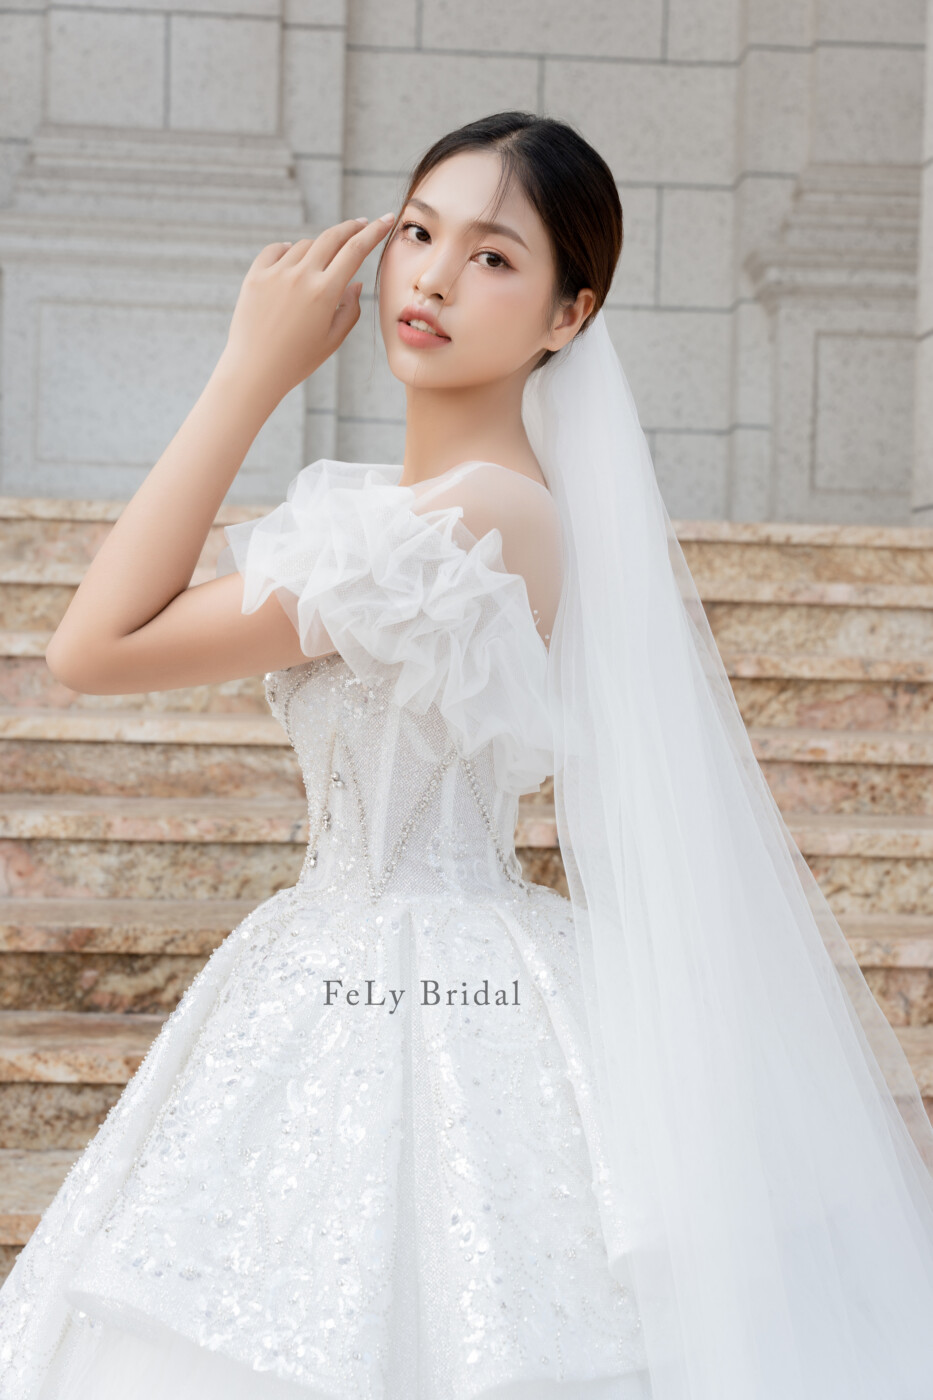 Lộ diện 2 trong 3 mẫu váy cưới của công chúa béo Quỳnh Anh bộ nào cũng  xuất sắc ai nhìn cũng muốn làm cô dâu luôn